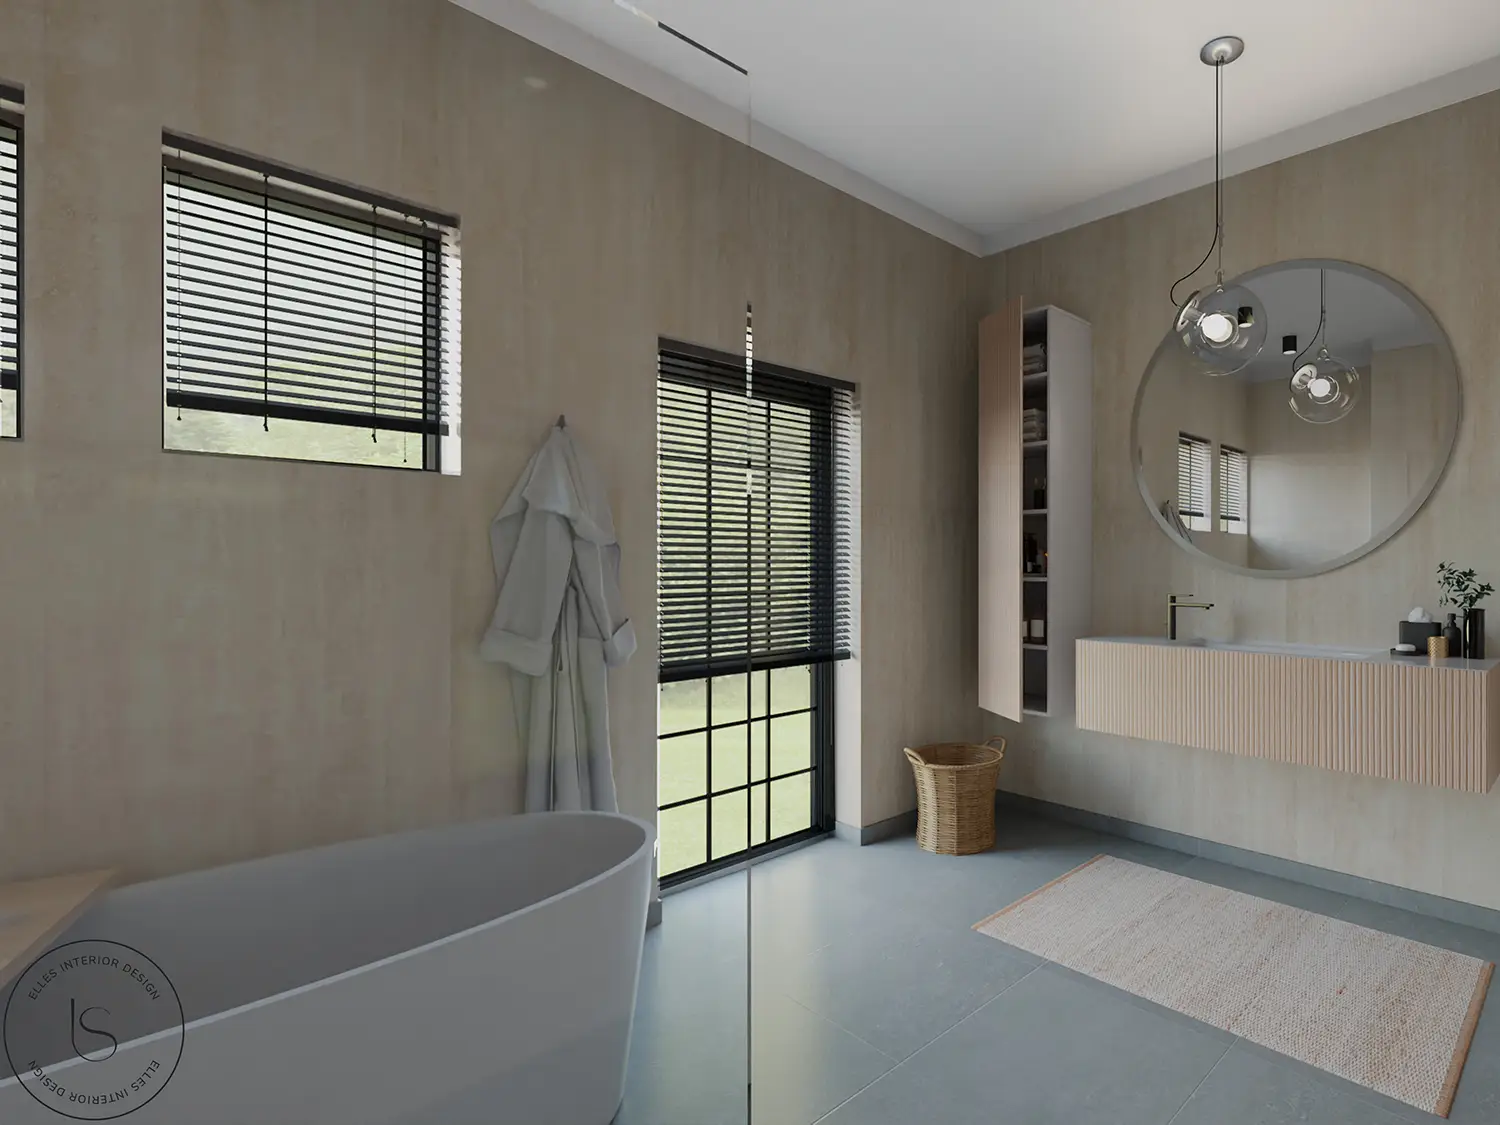 Render bagno con doccia e vasca da bagno per momenti di relax e benessere. Progetto realizzato dallo studio Elles Interior Design